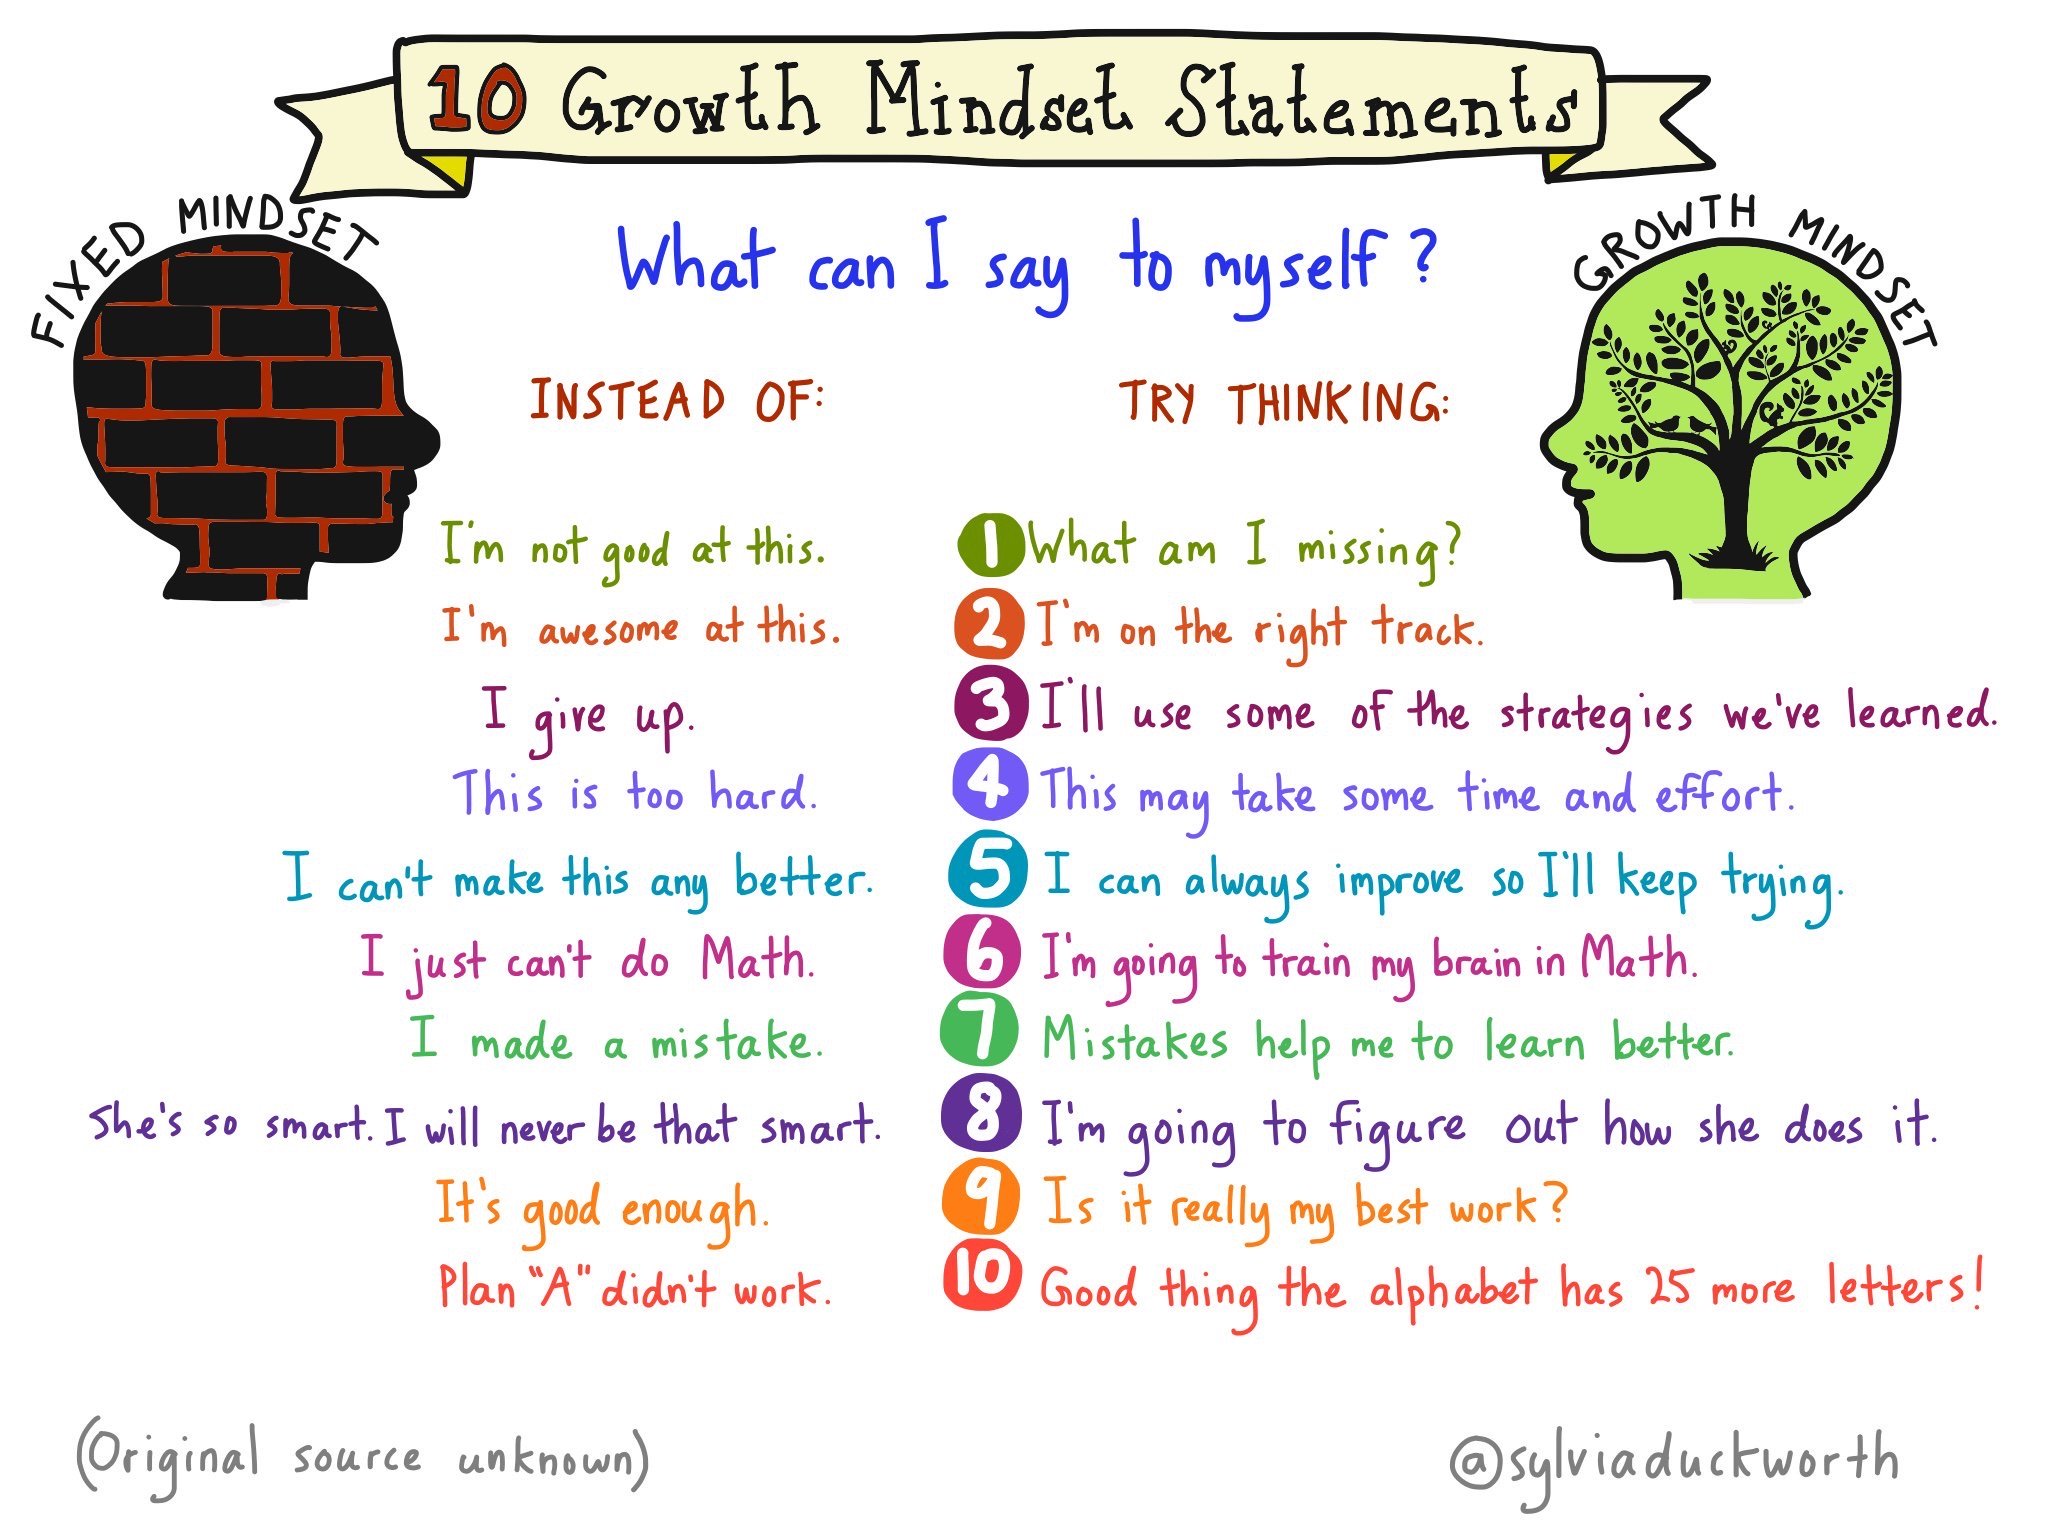 growth vs fixed mindset